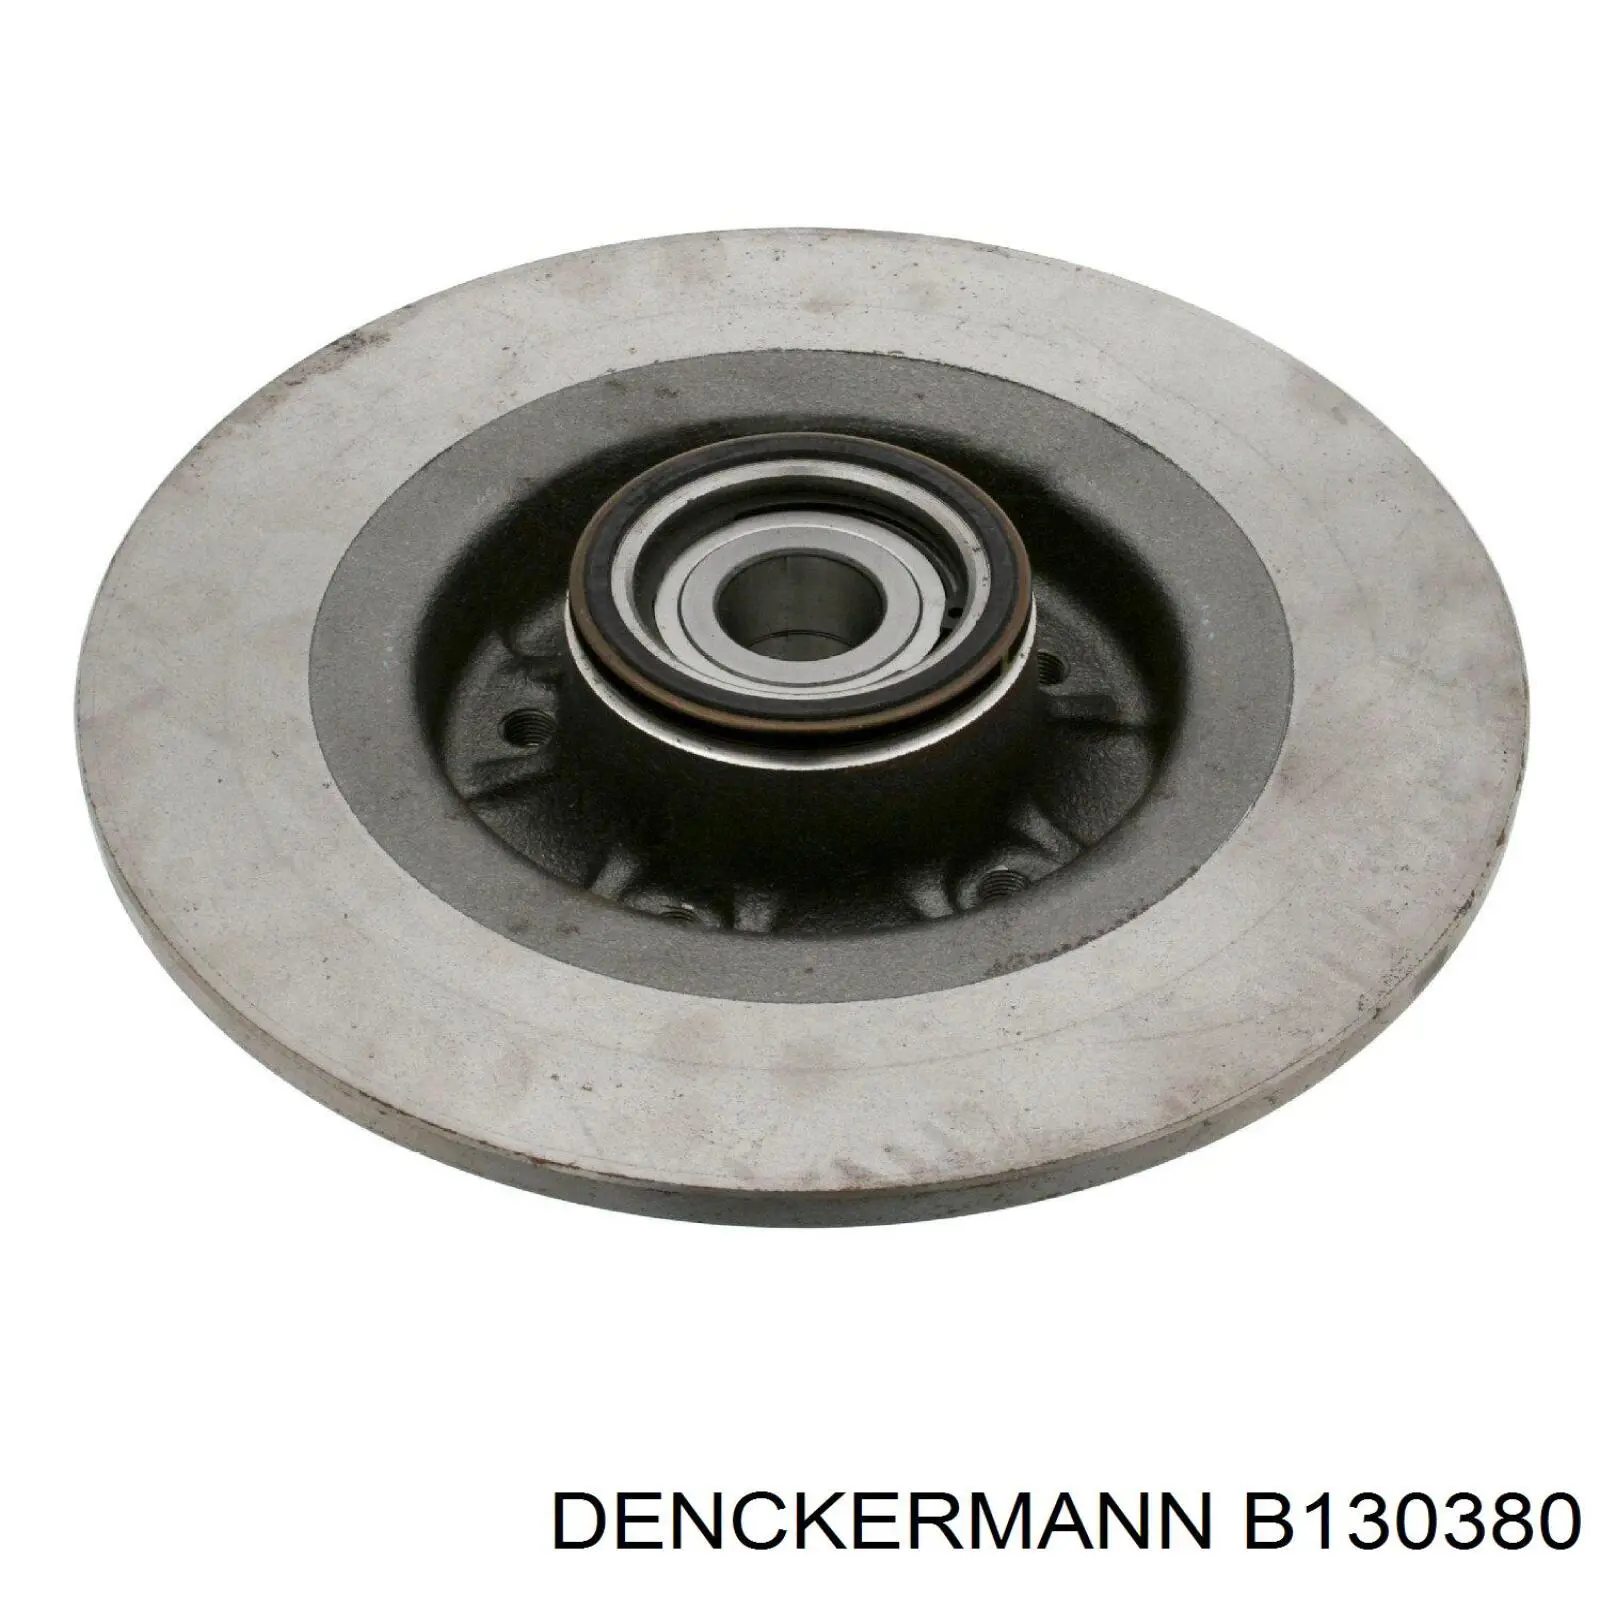 B130380 Denckermann disco de freno trasero